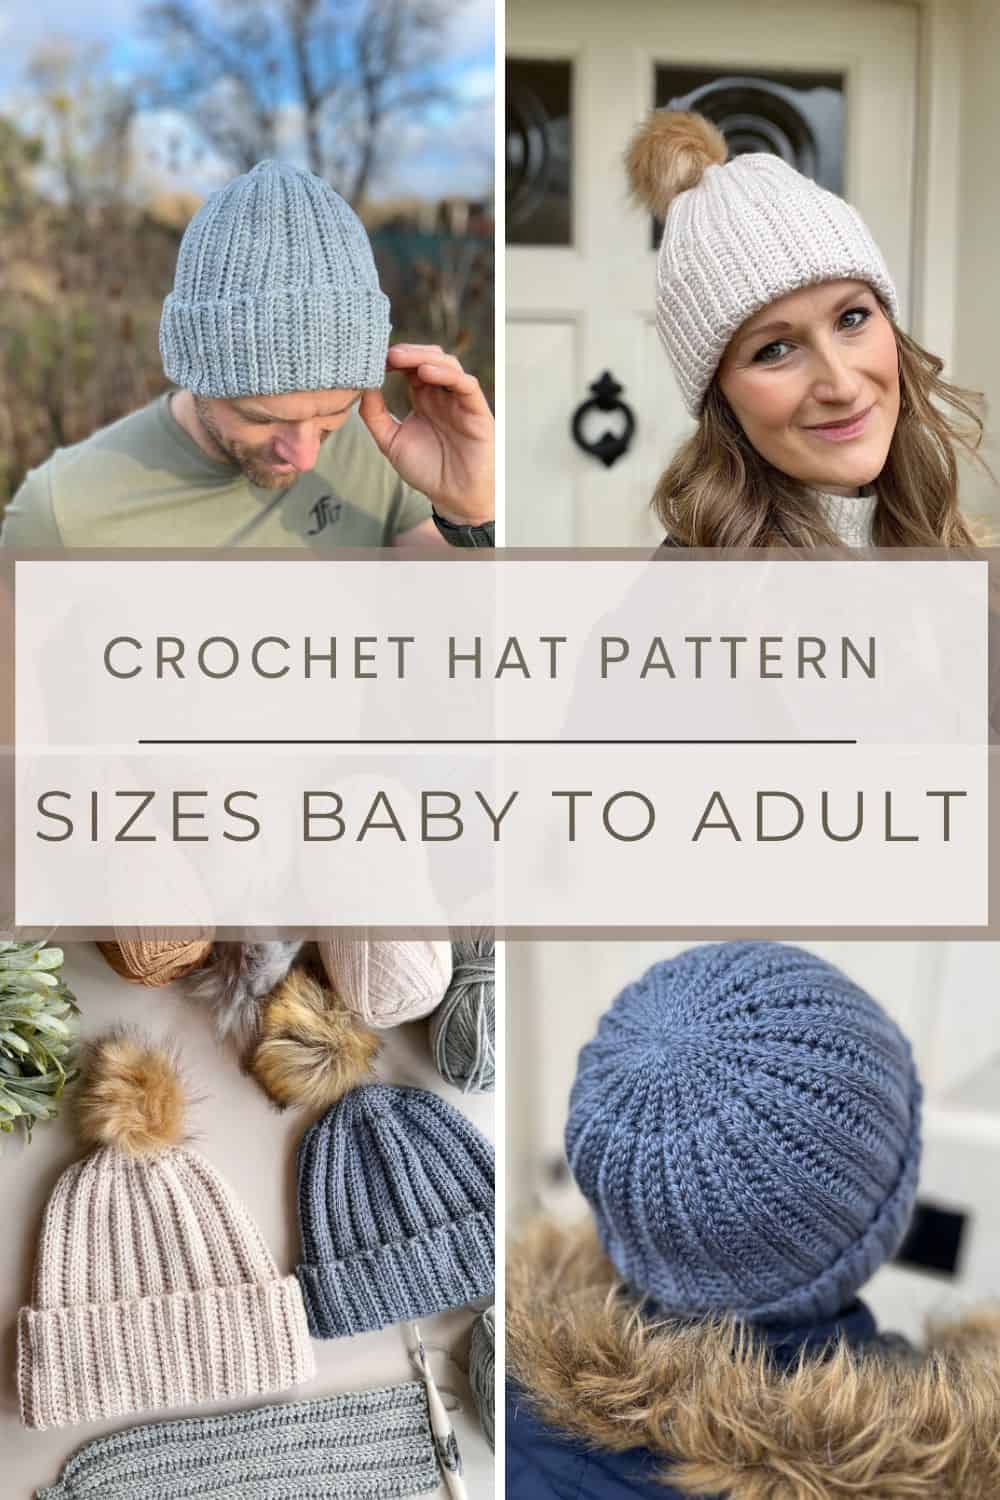 dk crochet hat pattern shown in 4 images.